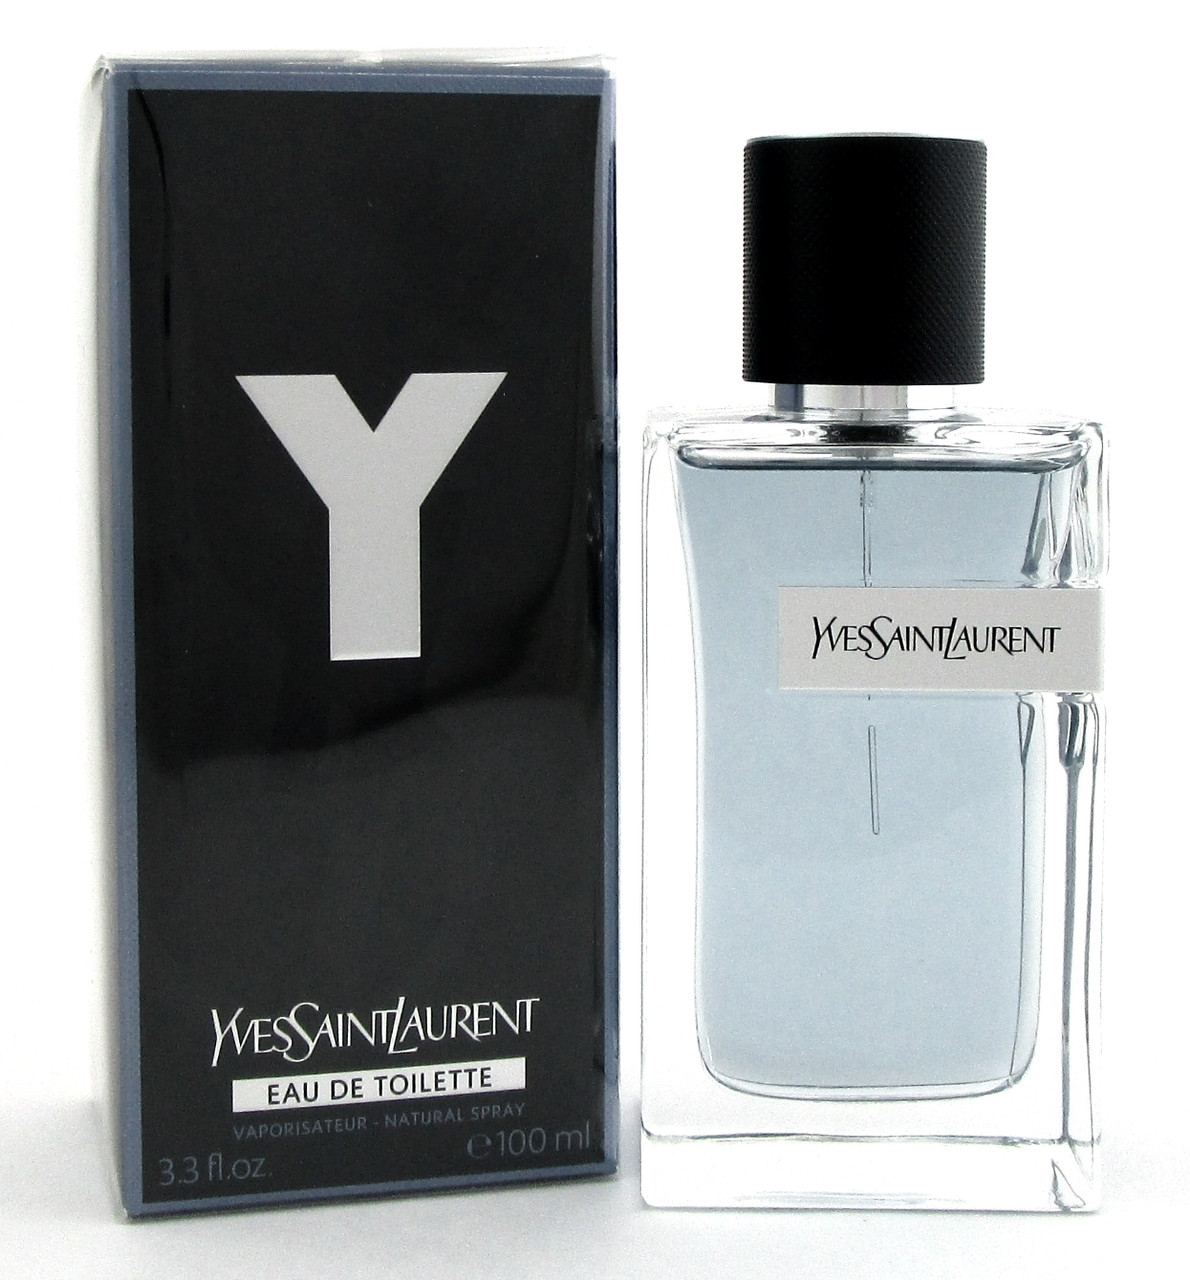 Y by Yves Saint Laurent Cologne 3.3oz. Eau de Toilette Spray for Men